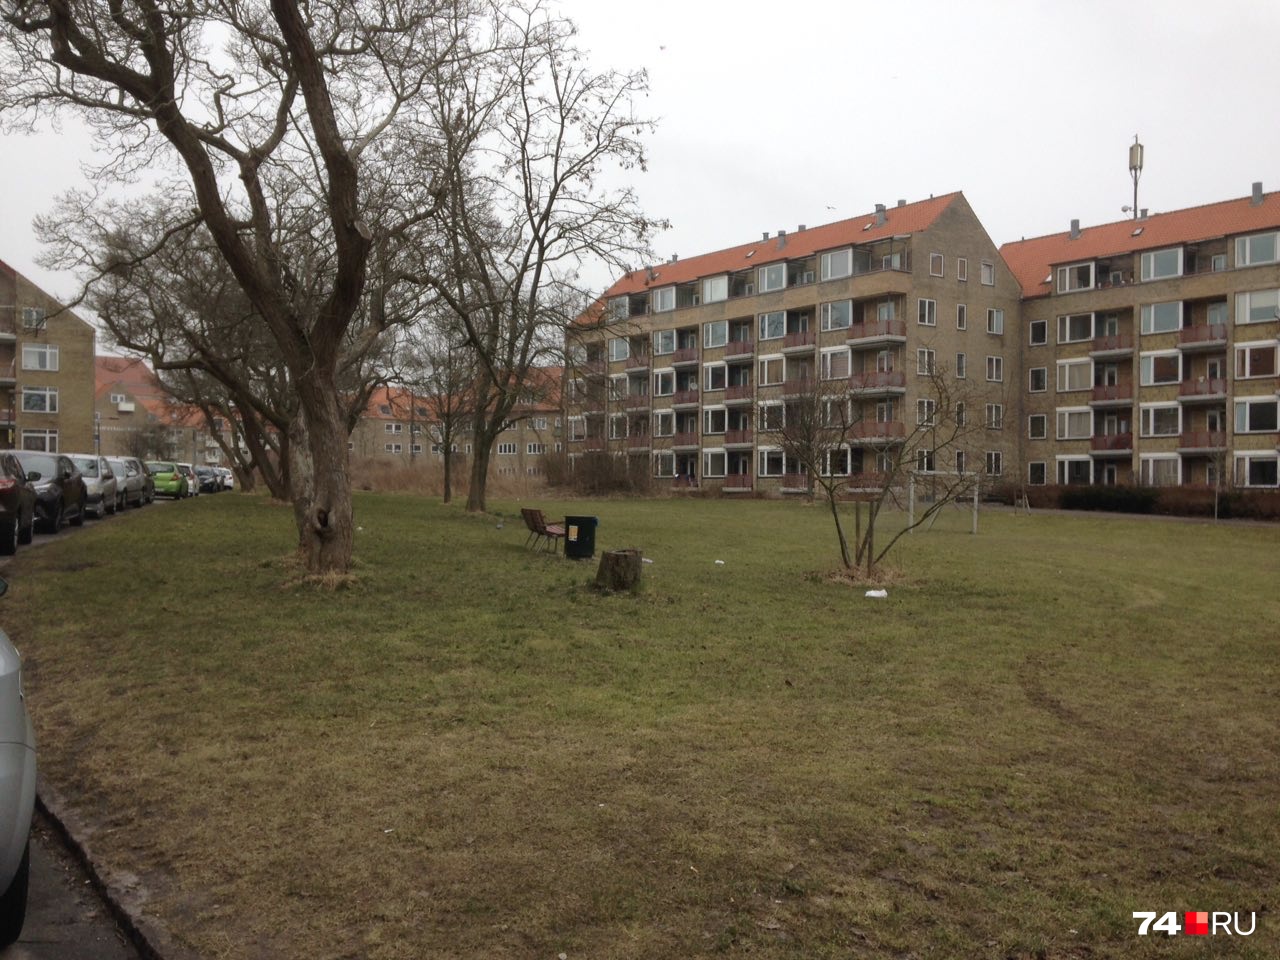 Вот так выглядят многие дворы в Ольборге — пустые газоны без благоустройства